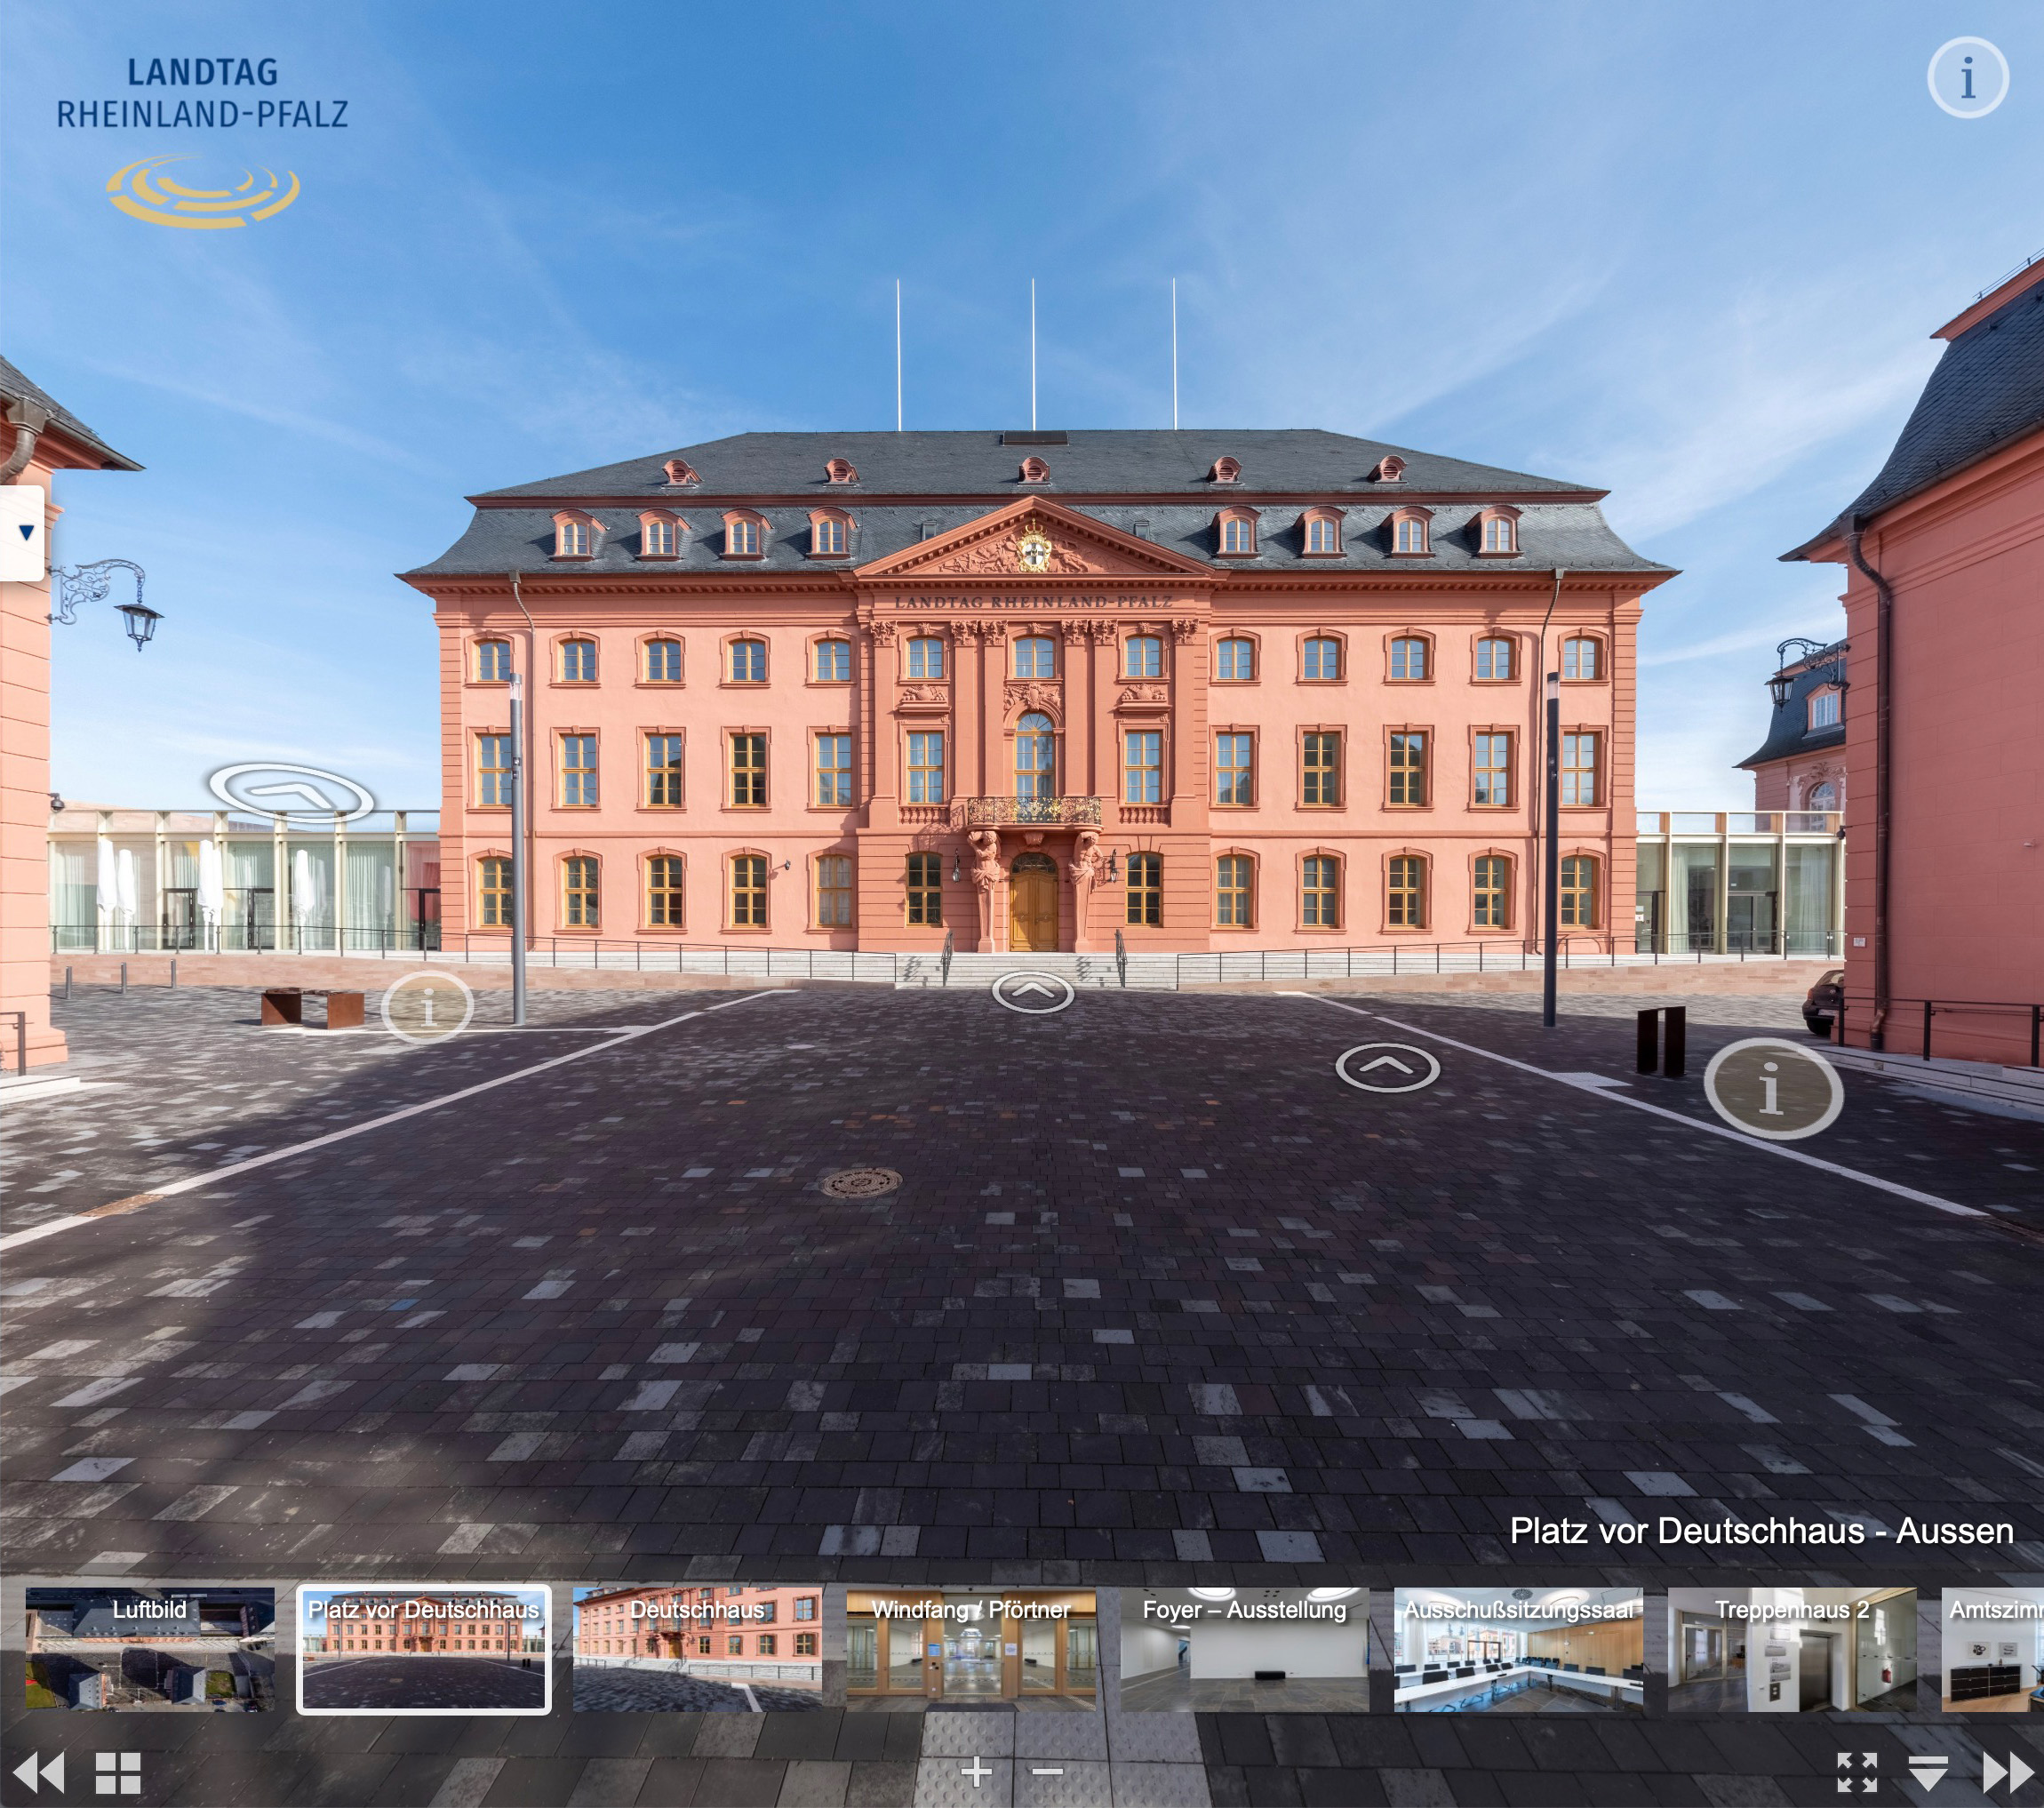 Virtuelle Tour durch den Landtag Rheinland-Pfalz